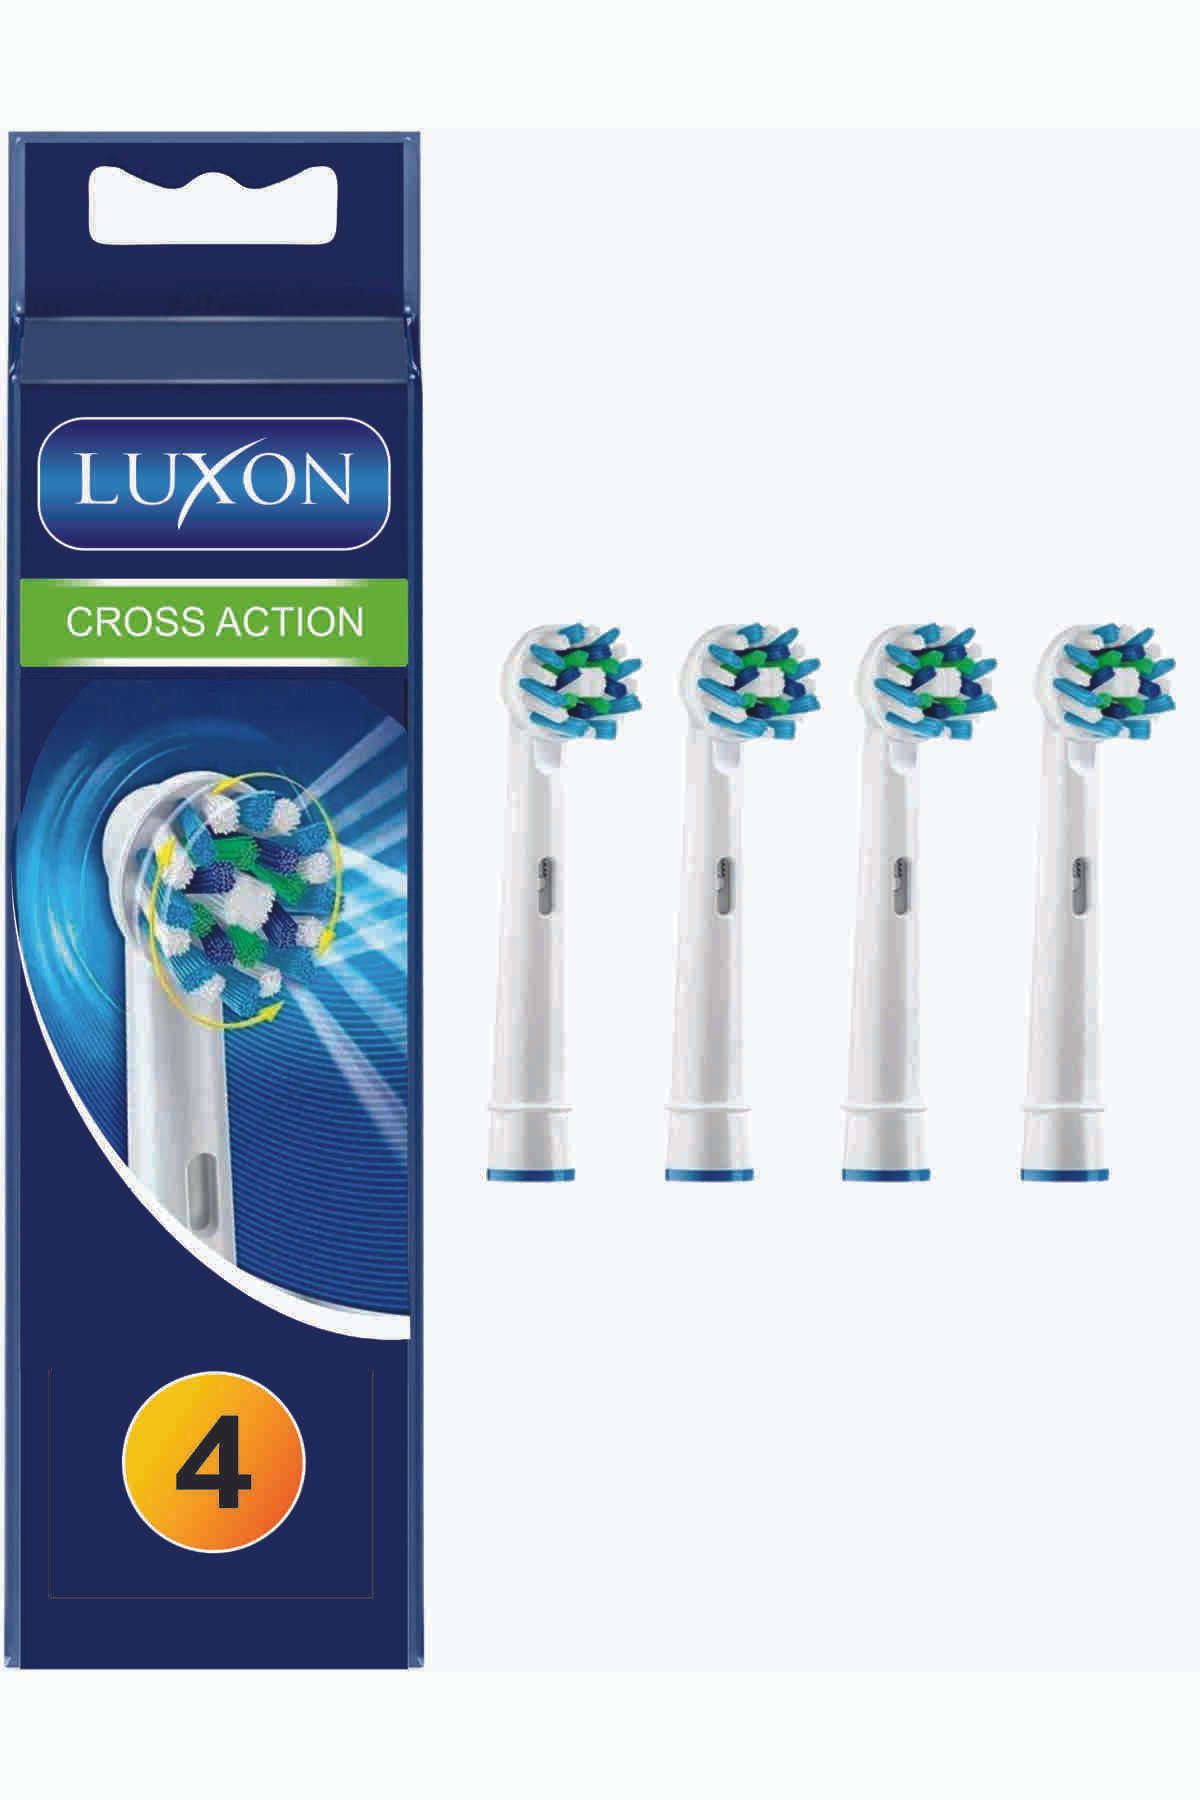 LUXON Oral B Şarjlı Ve Pilli Diş Fırçaları İle Uyumlu Ekstra Yumuşak 4 Adet Yedek Başlık